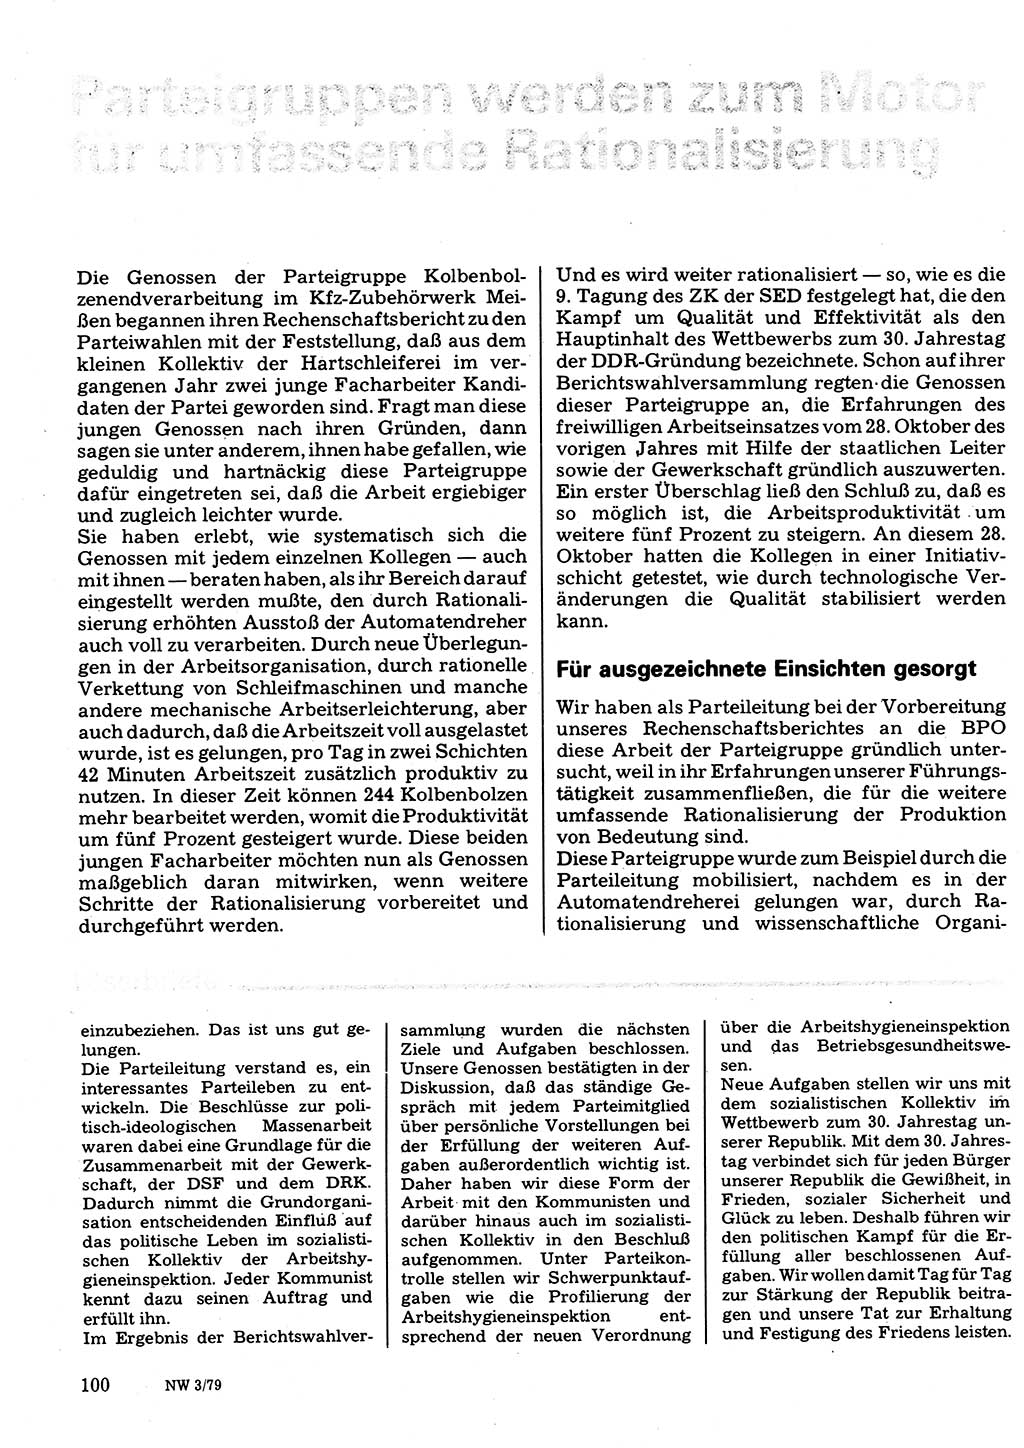 Neuer Weg (NW), Organ des Zentralkomitees (ZK) der SED (Sozialistische Einheitspartei Deutschlands) für Fragen des Parteilebens, 34. Jahrgang [Deutsche Demokratische Republik (DDR)] 1979, Seite 100 (NW ZK SED DDR 1979, S. 100)